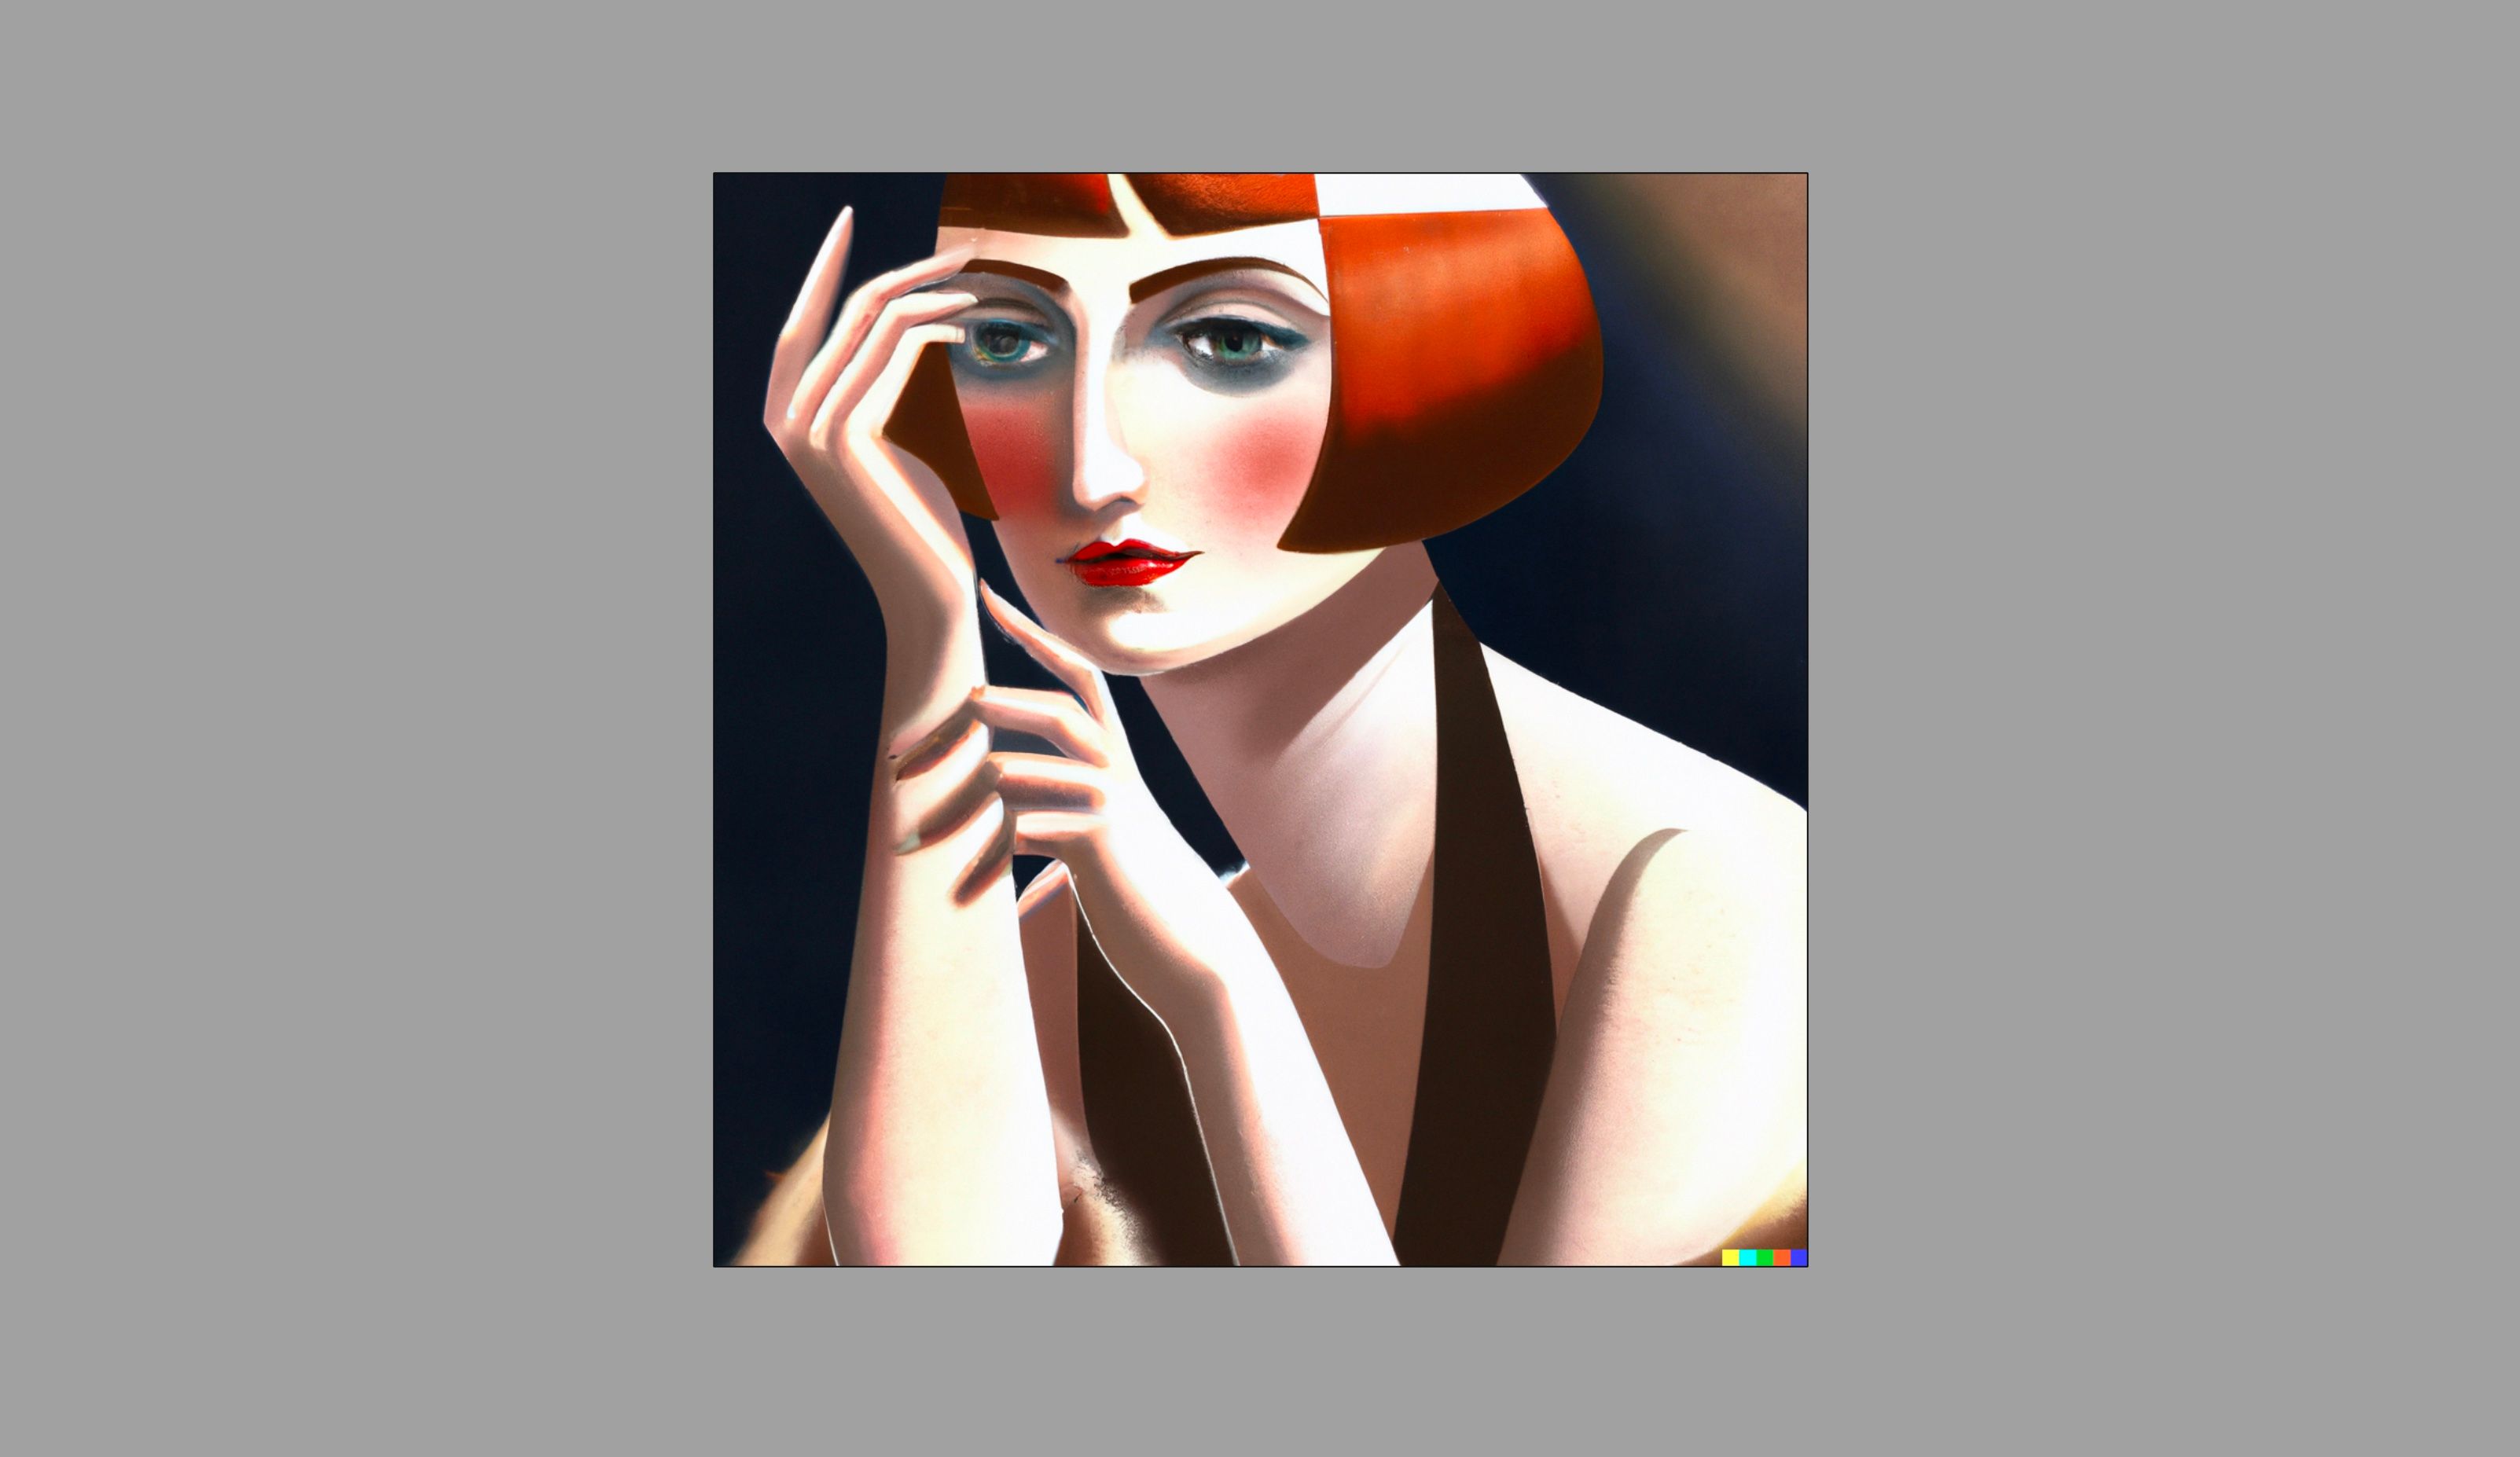 Retrato de uma mulher ruiva no estilo de Tamara de Lempicka